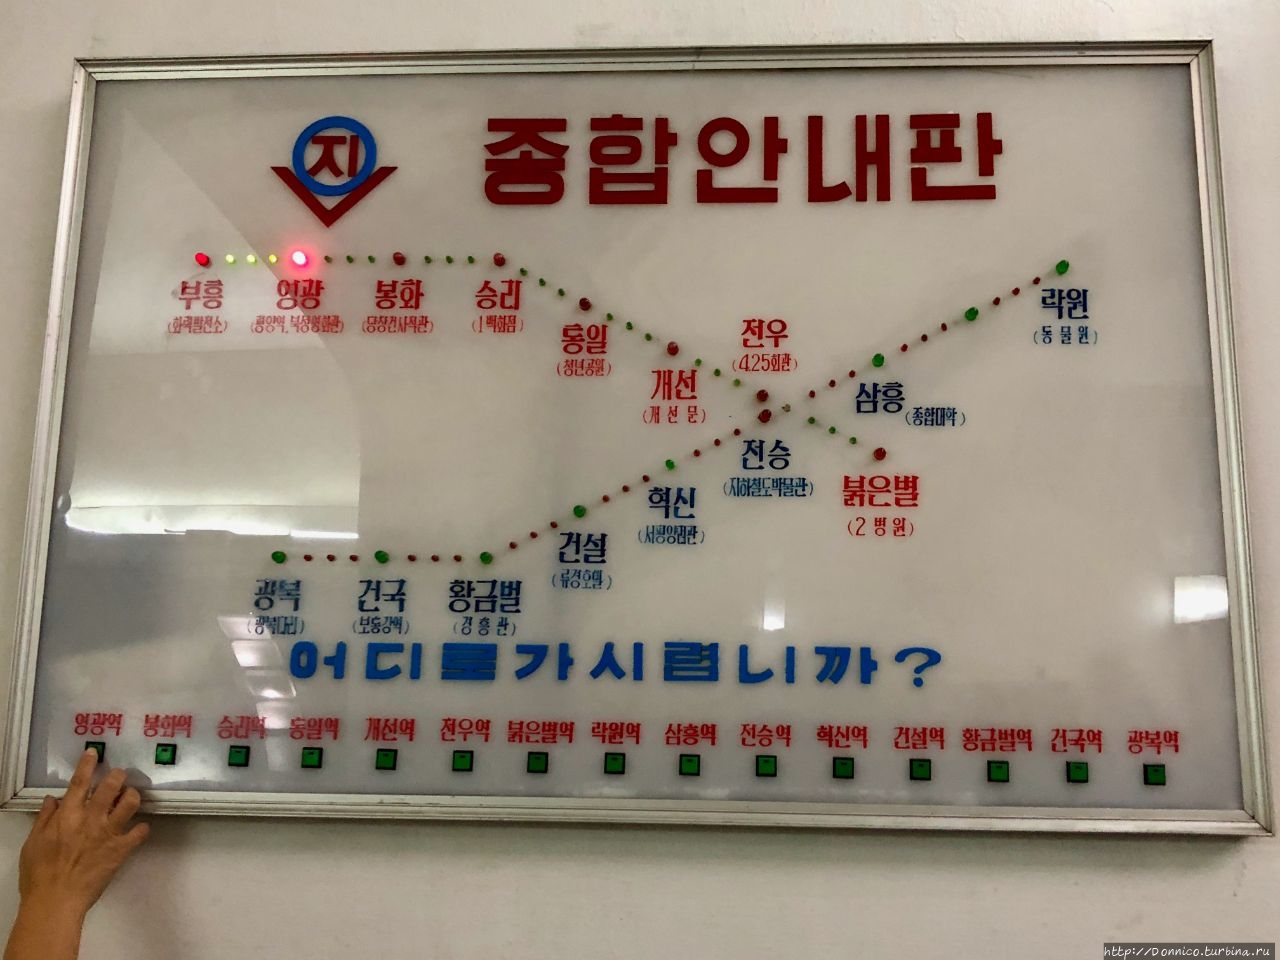 Пхеньянское метро Пхеньян, КНДР